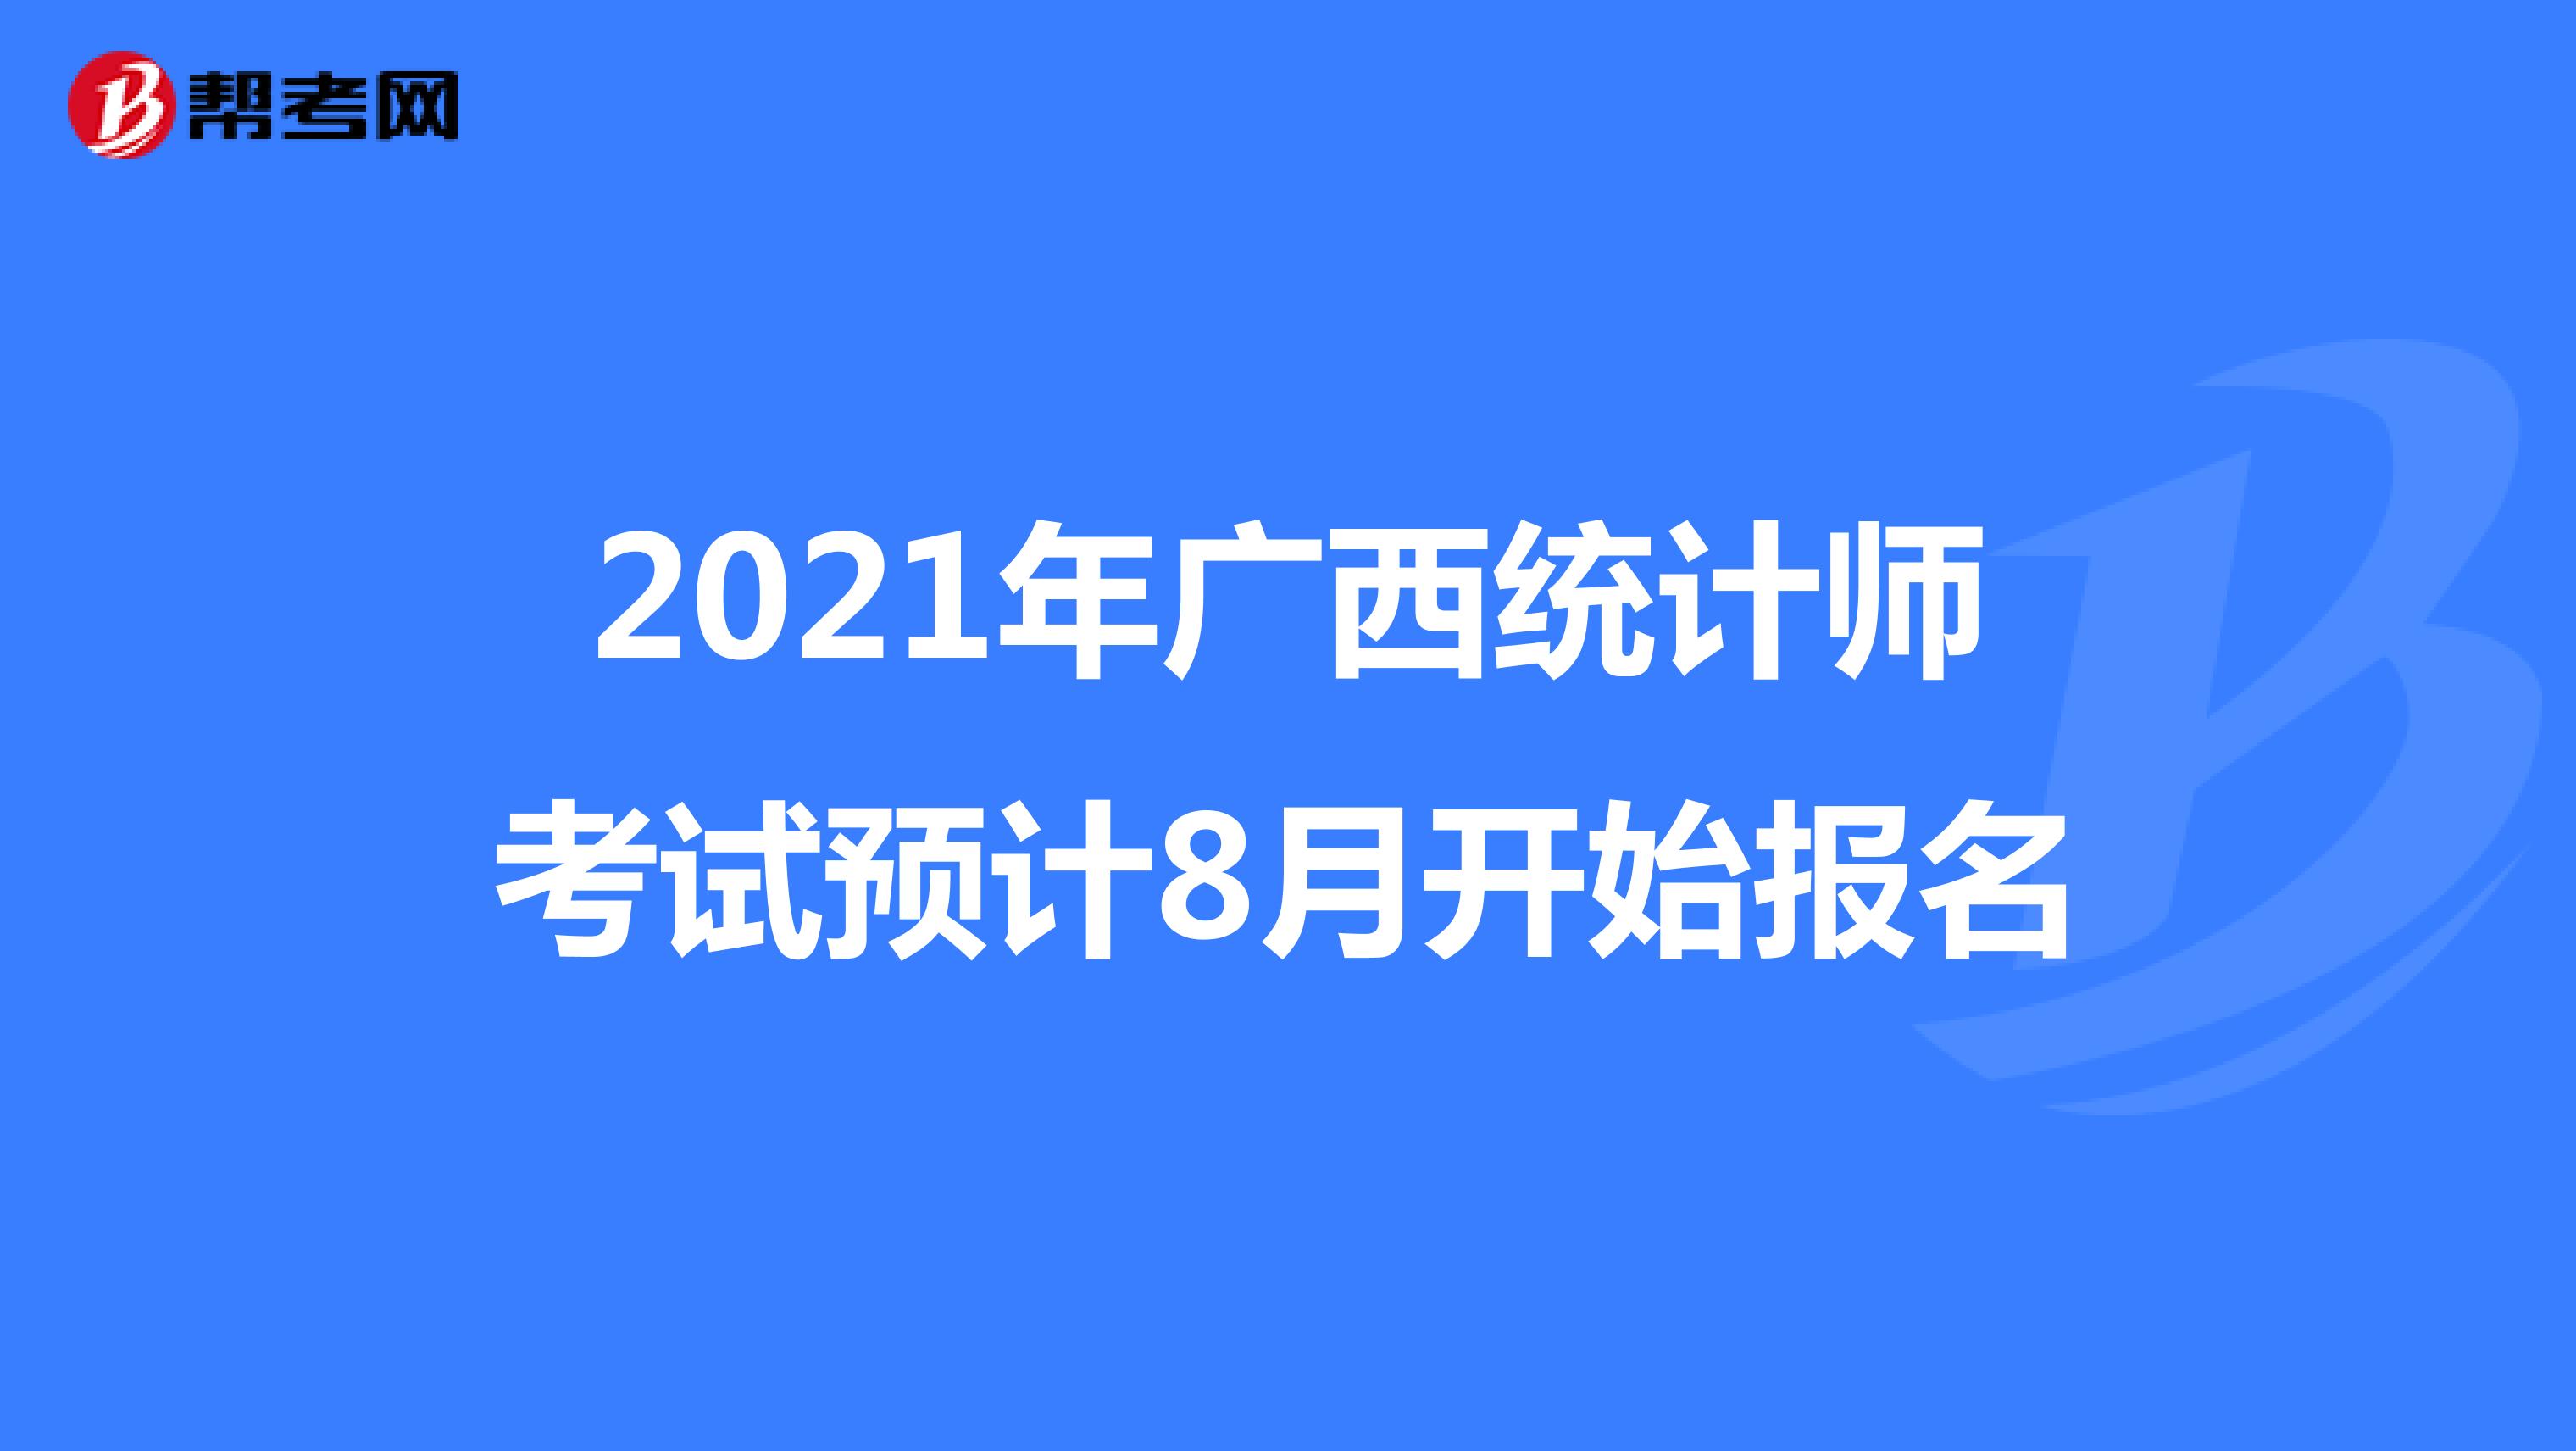 2021年广西统计师考试预计8月开始报名